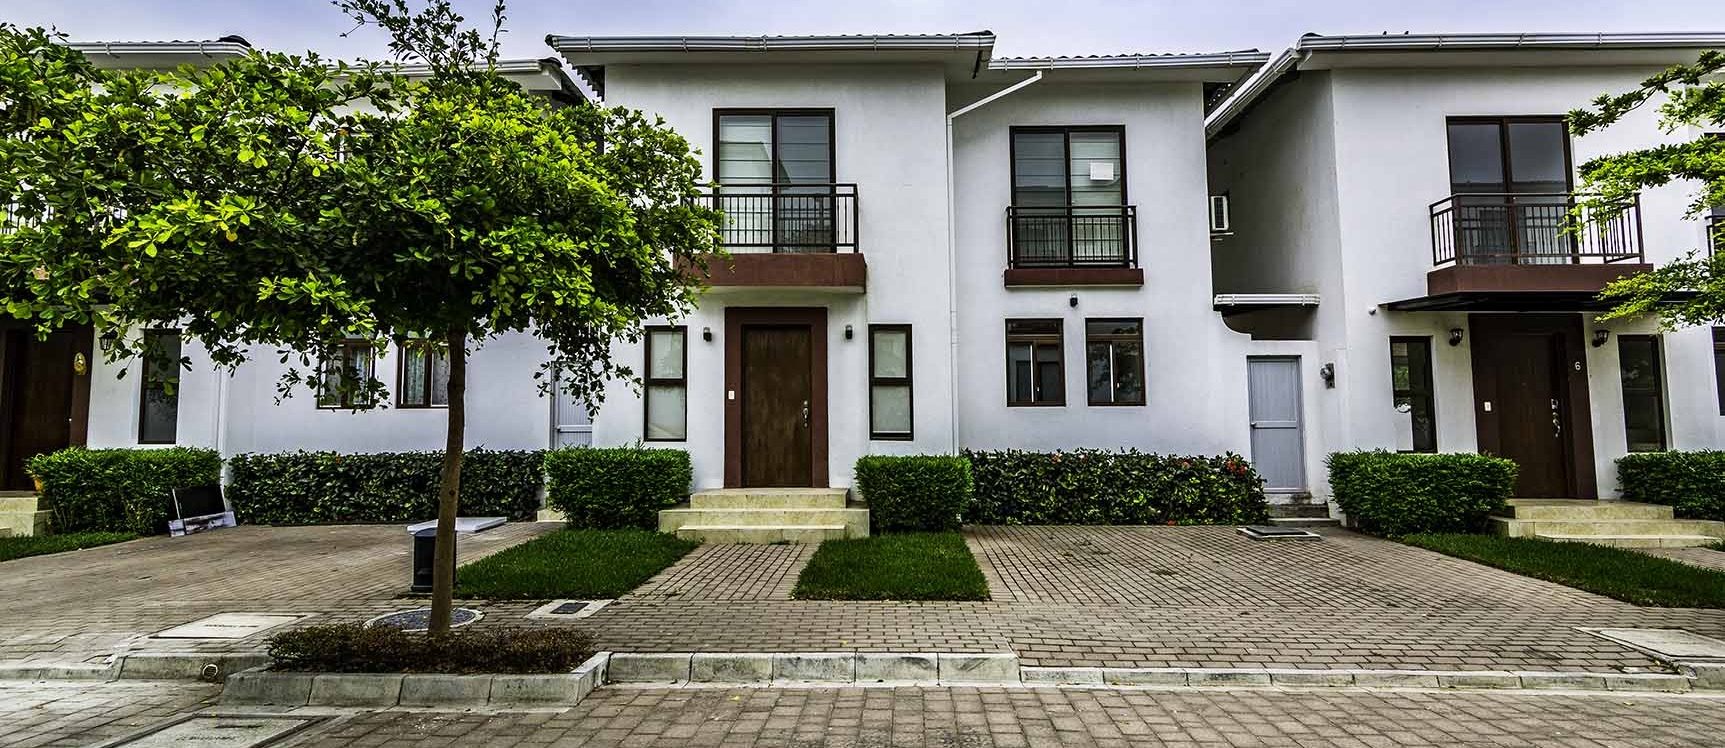 GeoBienes - Casa en Alquiler en Villas del Bosque Vía a La Costa - Guayaquil - Plusvalia Guayaquil Casas de venta y alquiler Inmobiliaria Ecuador